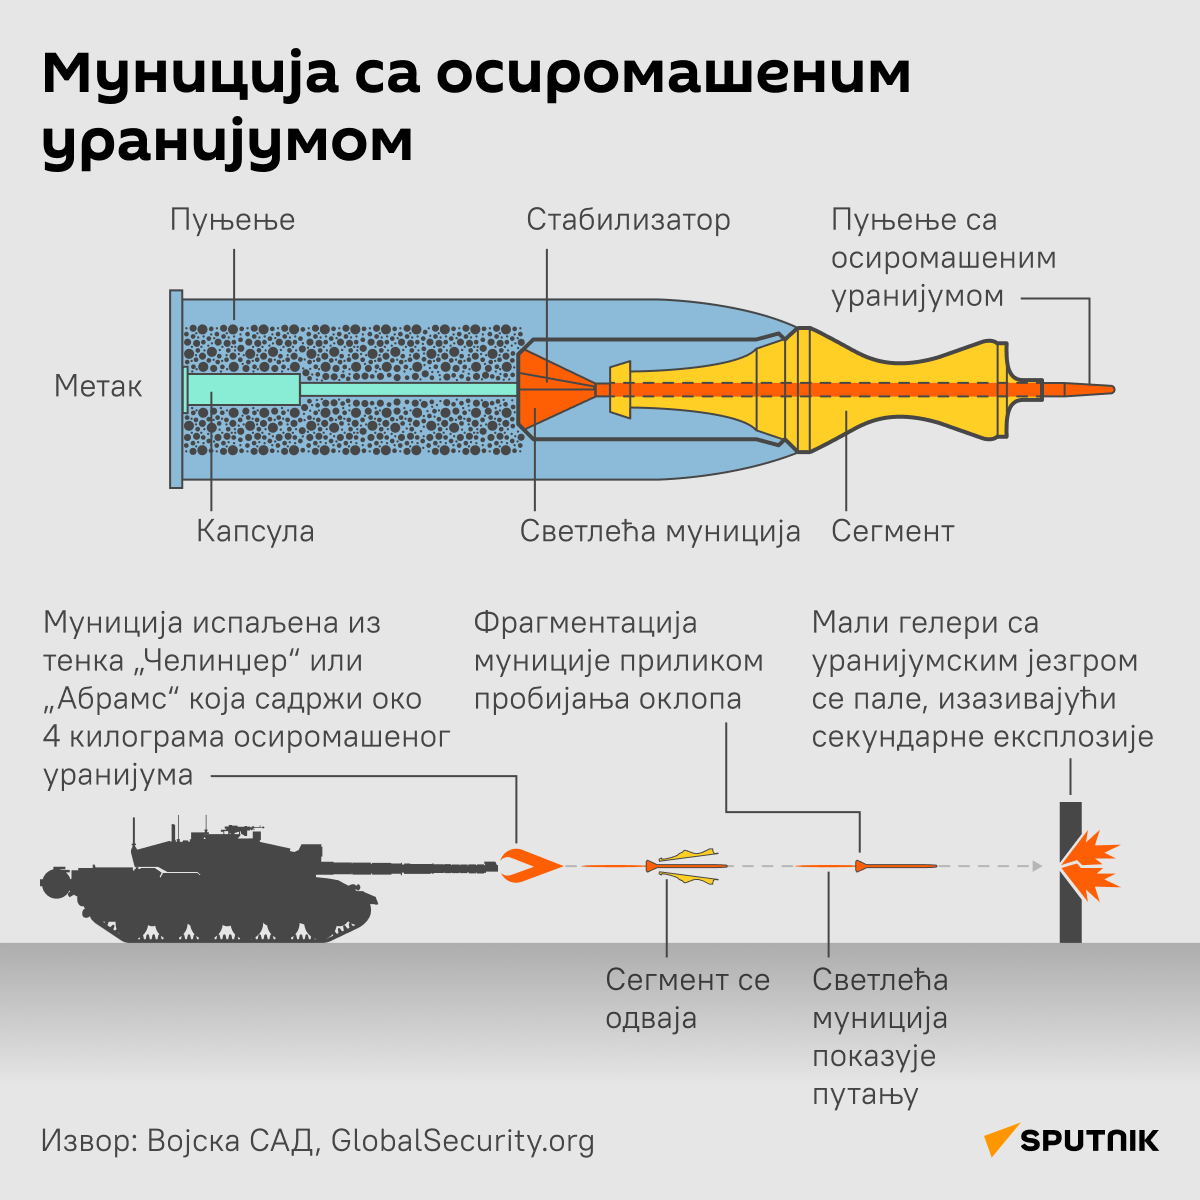 Муниција са осиромашеним уранијумом ЋИРИЛИЦА деск - Sputnik Србија